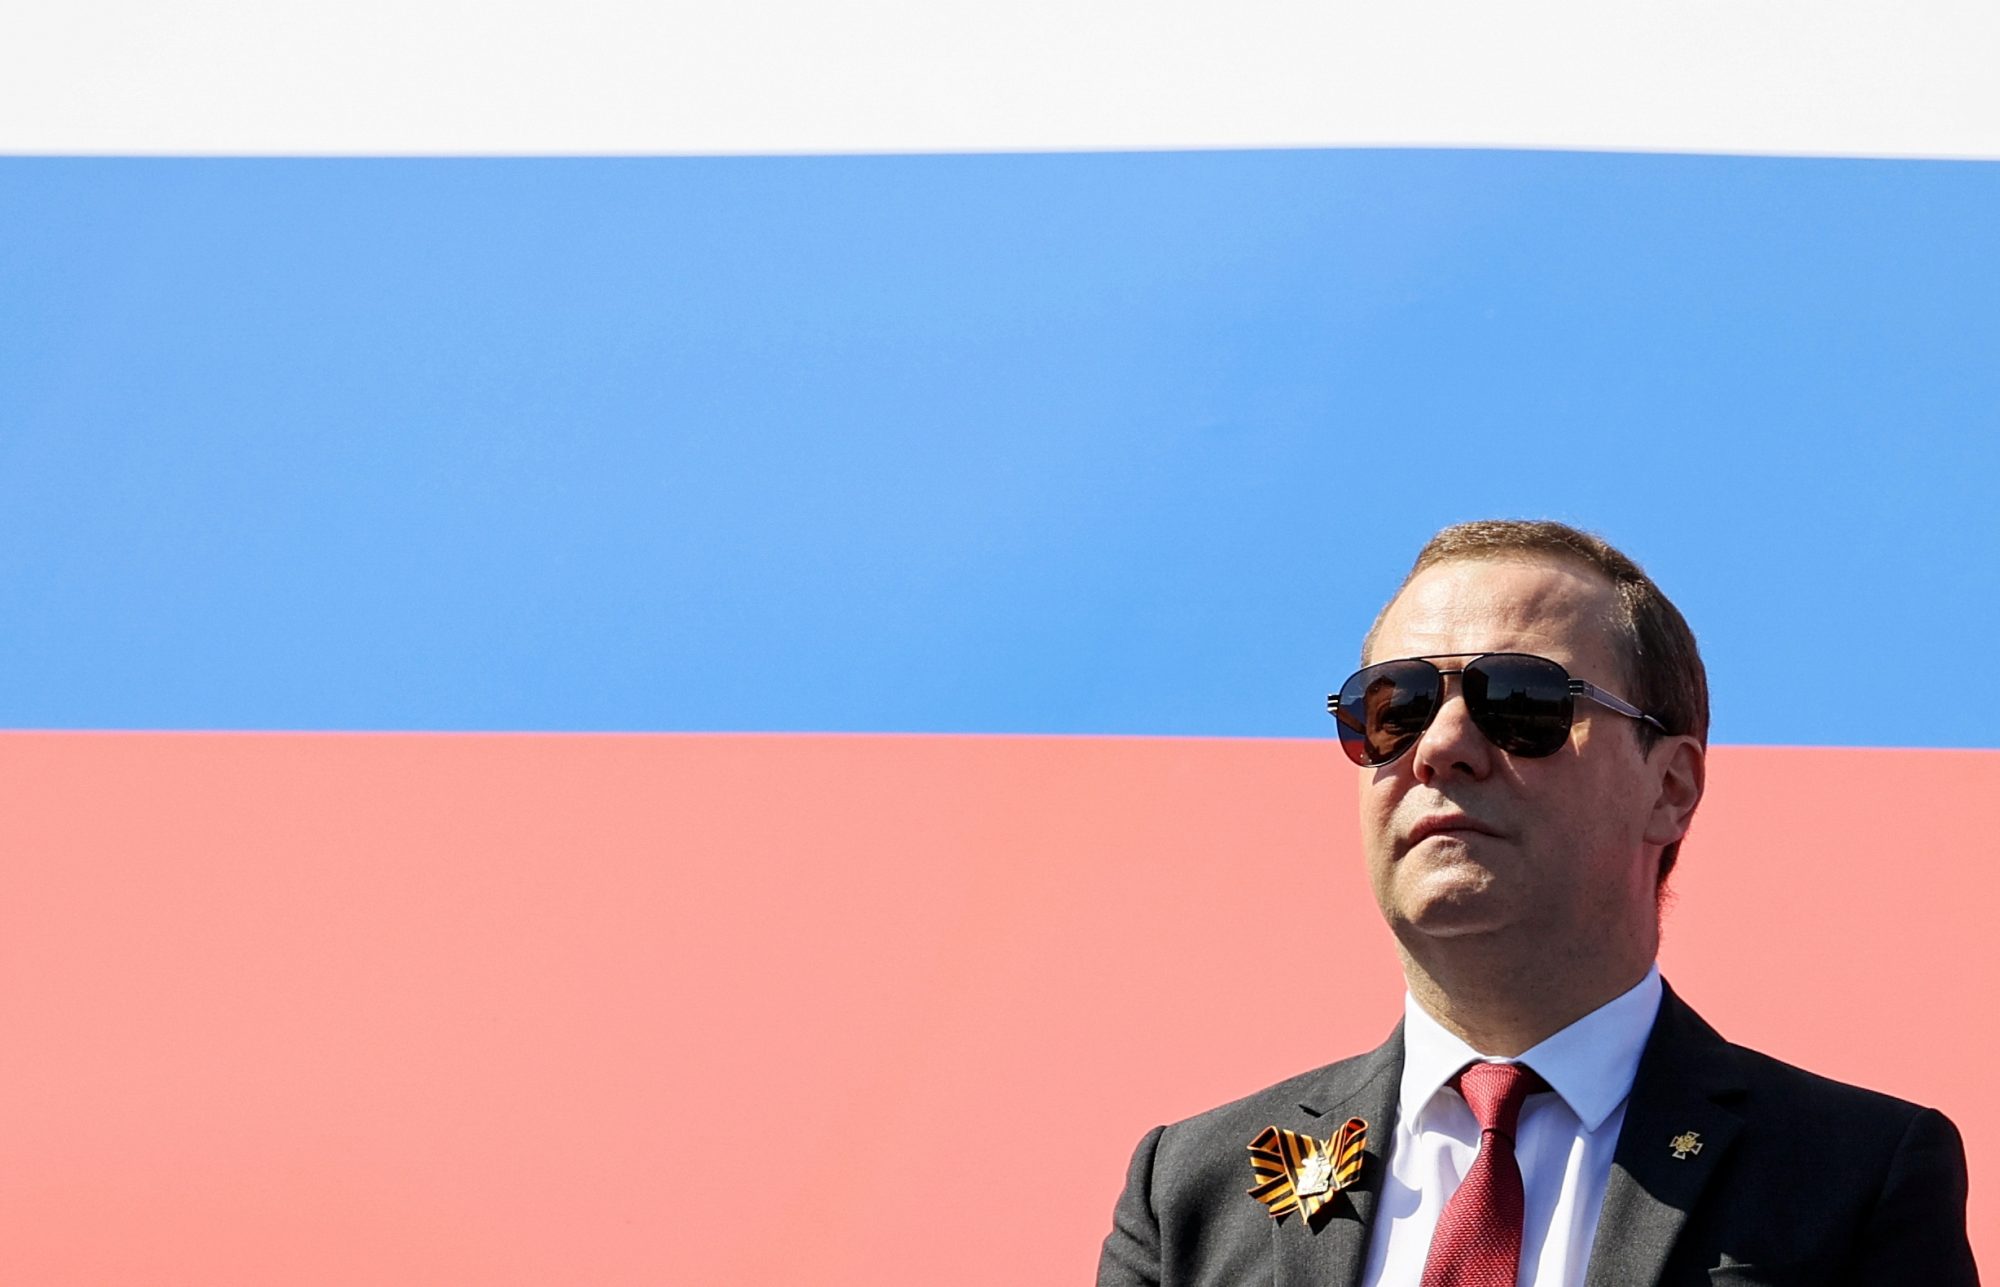 Korridor Forbrydelse udarbejde Former moderate Dmitry Medvedev becomes Putin's pro-war cheerleader -  Atlantic Council